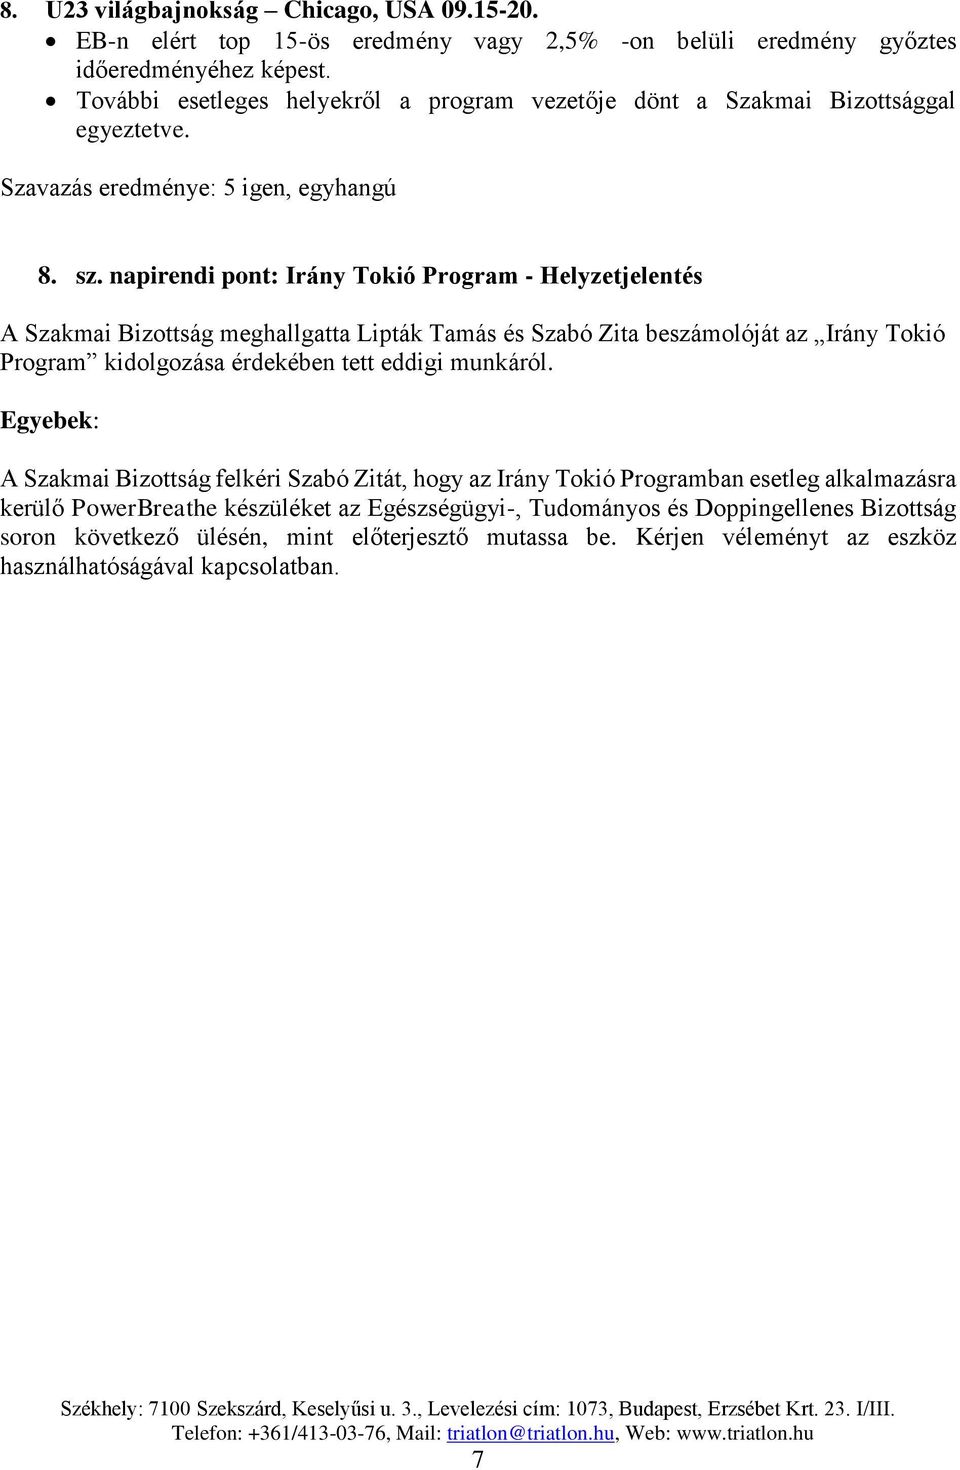 napirendi pont: Irány Tokió Program - Helyzetjelentés A Szakmai Bizottság meghallgatta Lipták Tamás és Szabó Zita beszámolóját az Irány Tokió Program kidolgozása érdekében tett